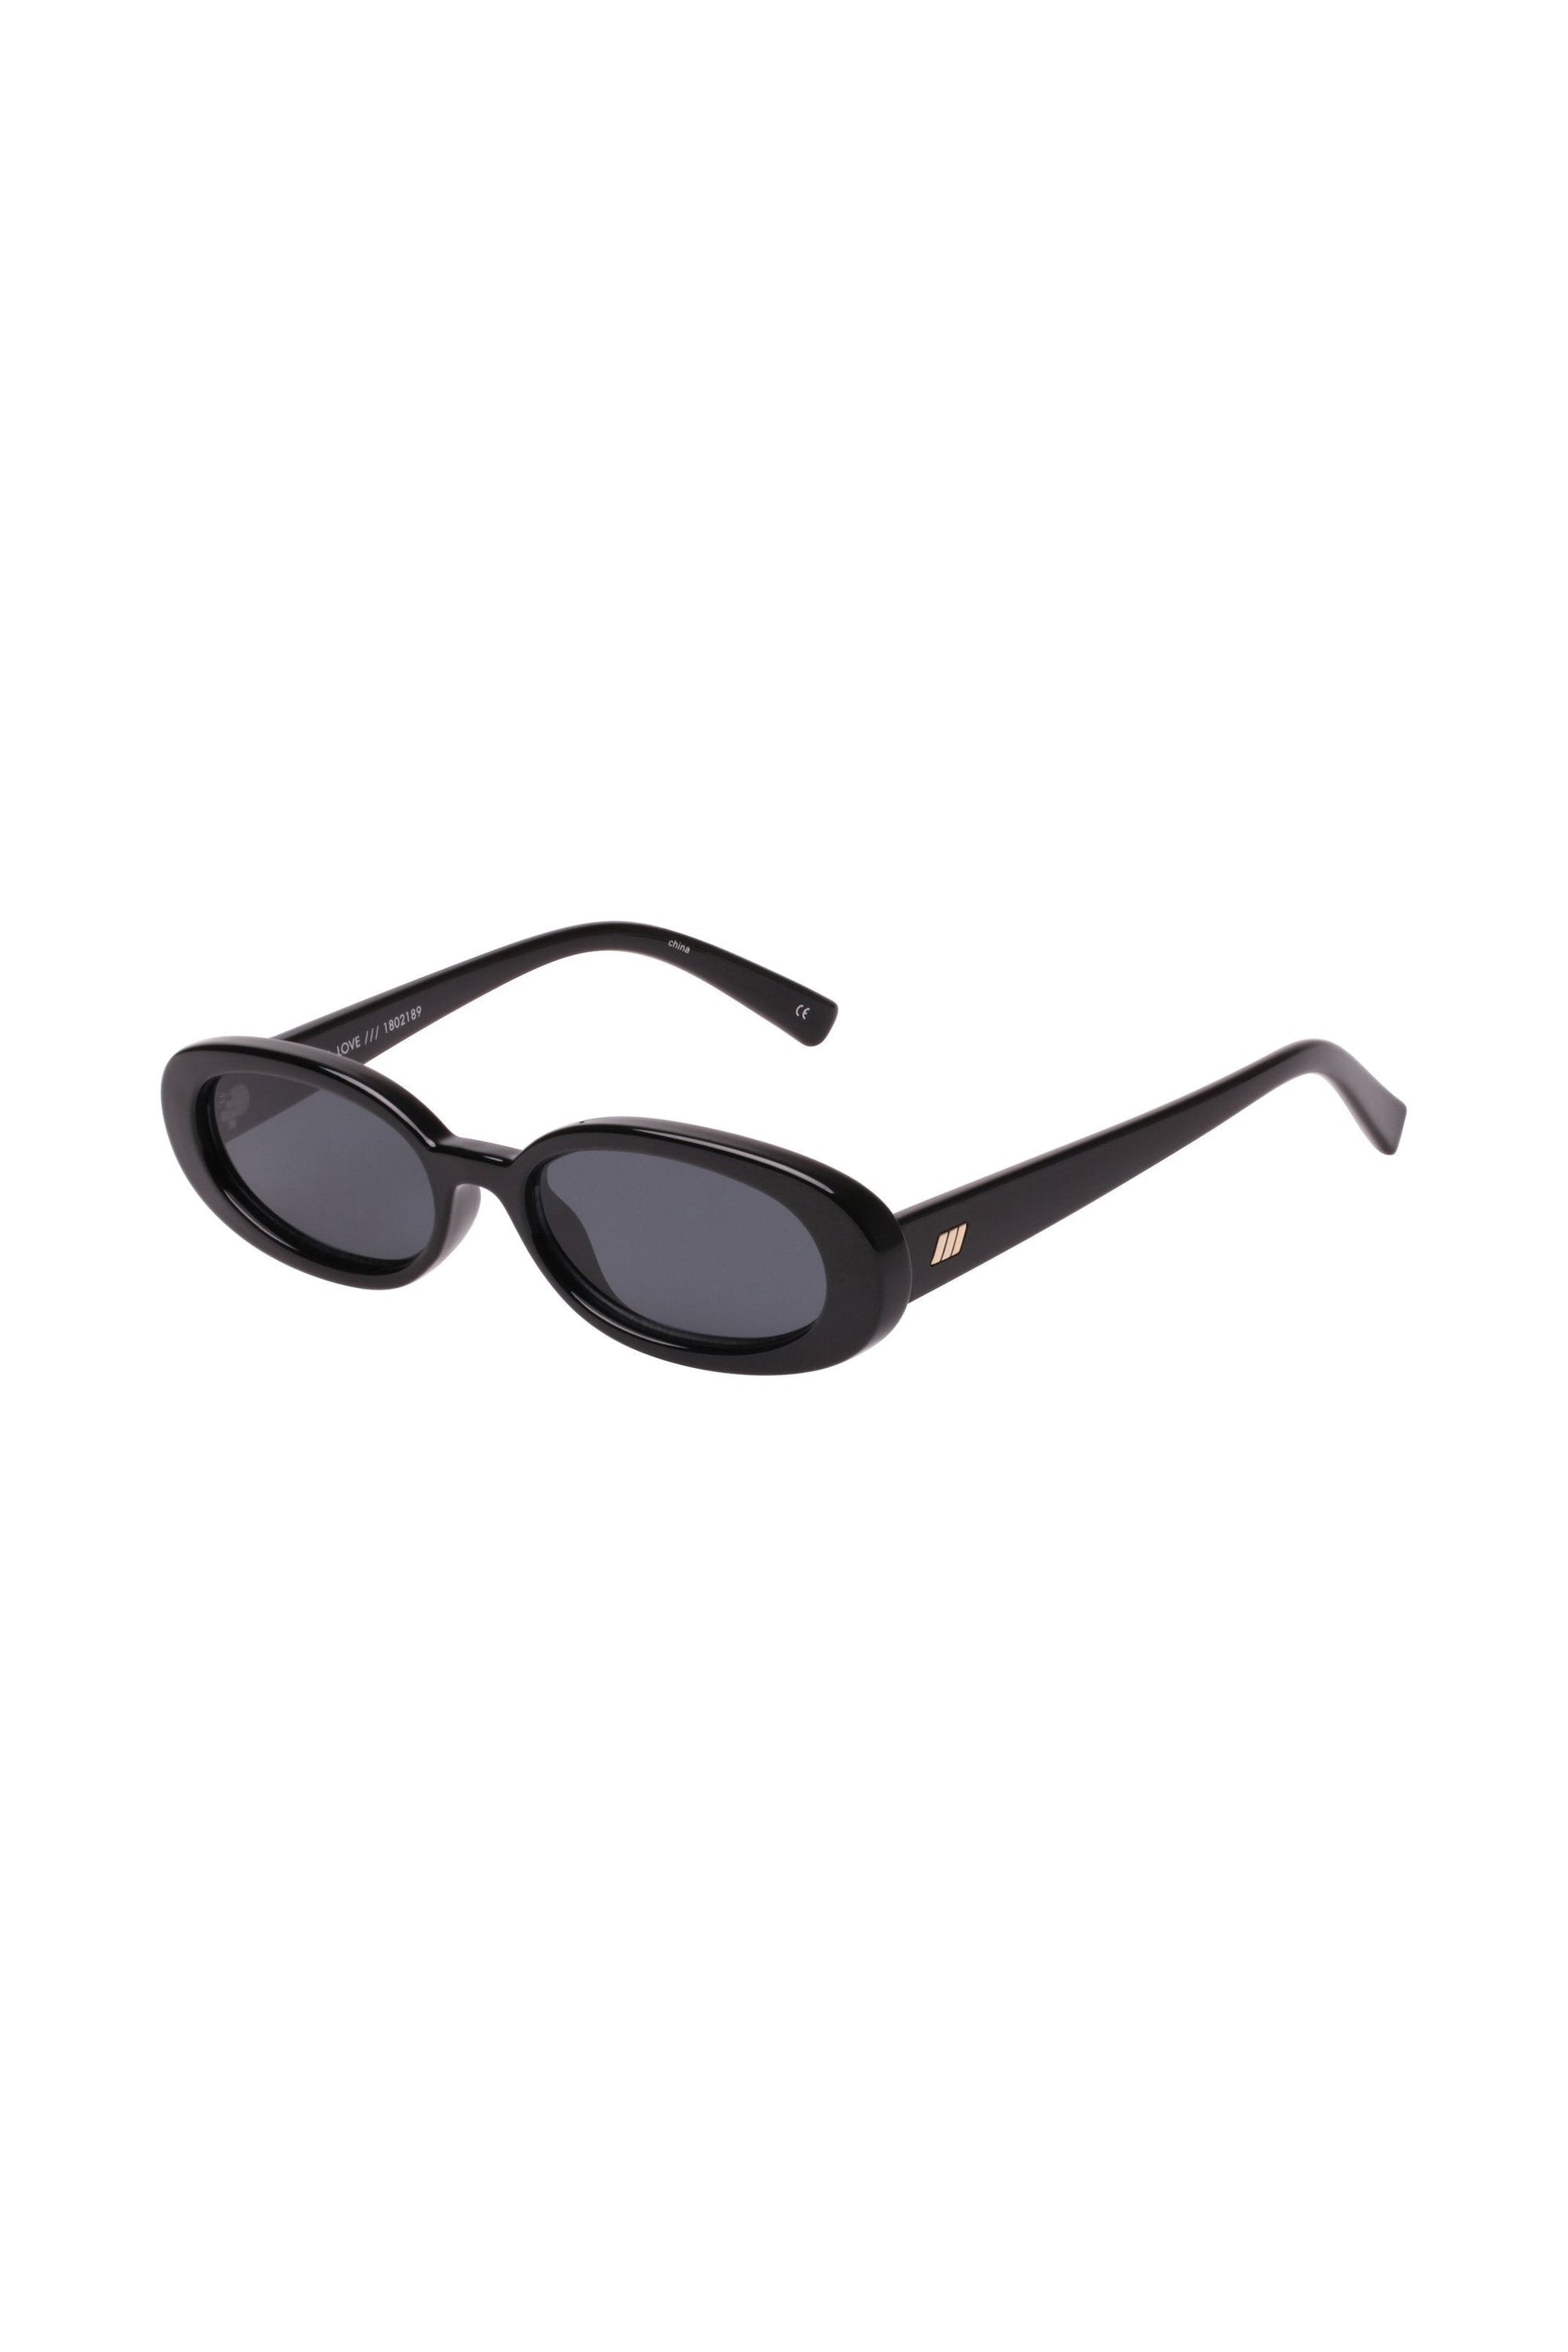 Le Specs Outta Love Sunglasses - Shiny Black - RUM Amsterdam